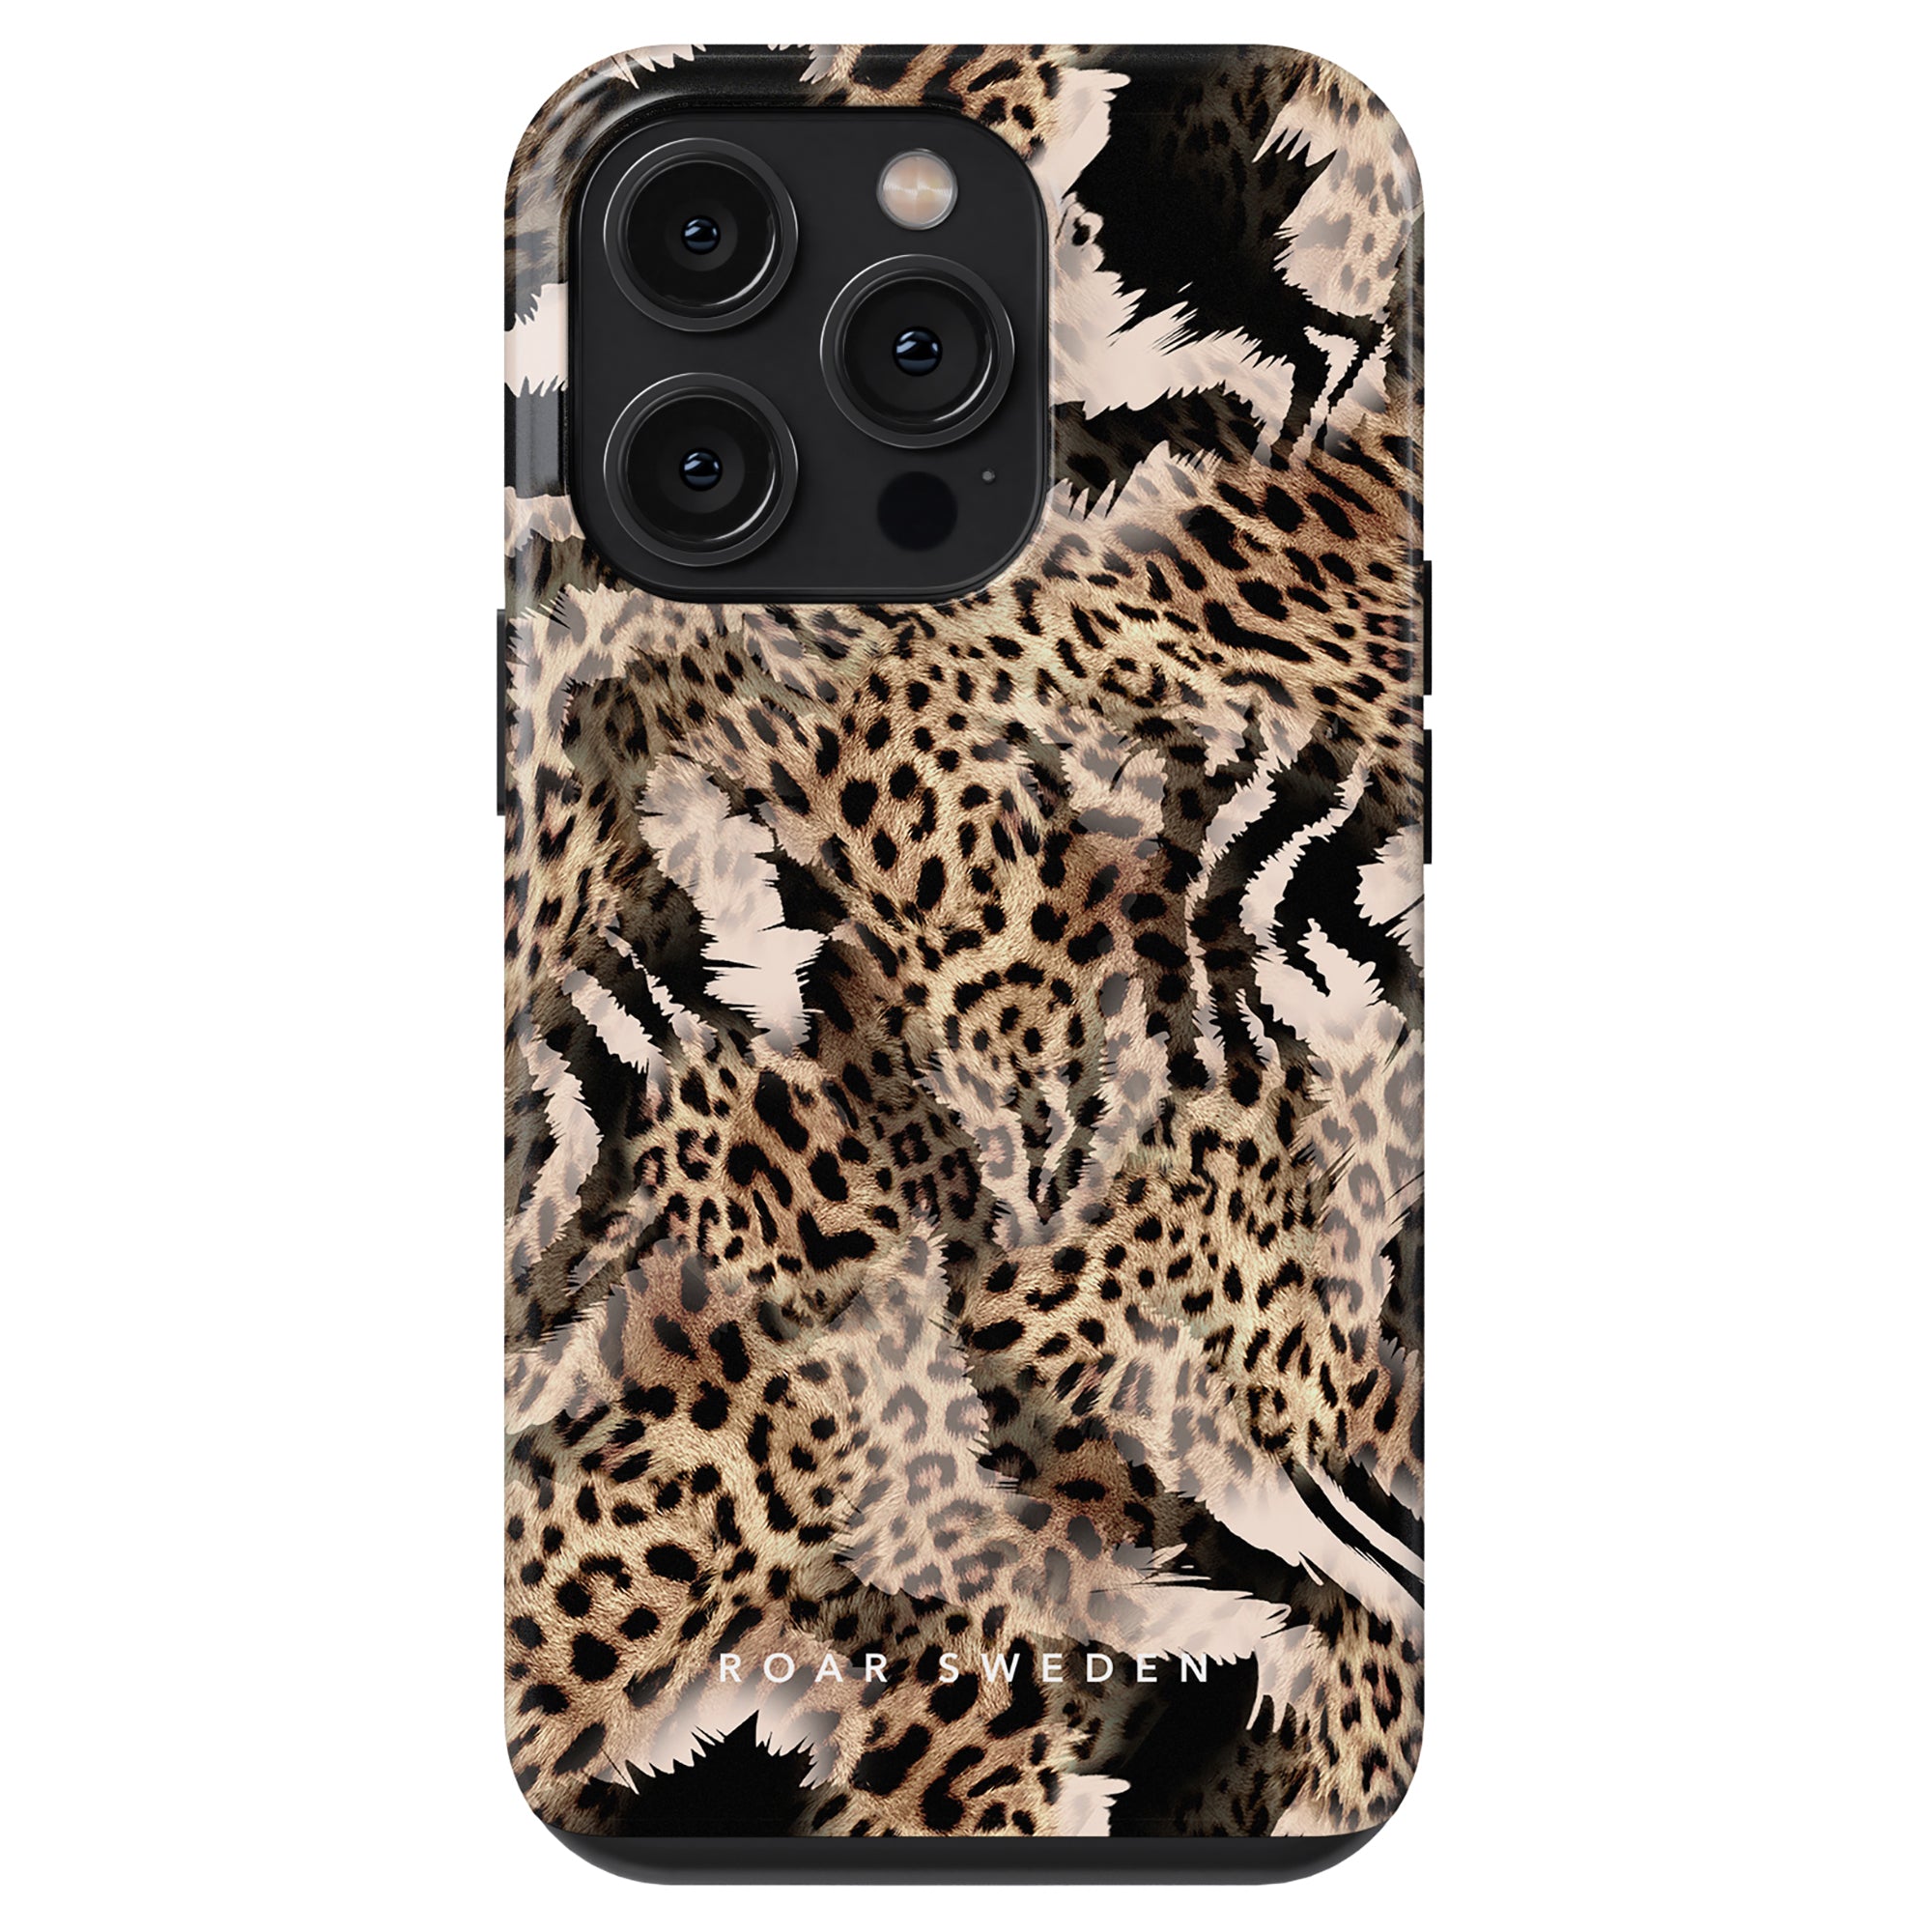 Ett Kenya - Tufft fodral för iPhone 11, med en snygg design av zebra- och leopardmönster. Det ger ett högt skyddsnivå för att skydda din telefon och lägger till en